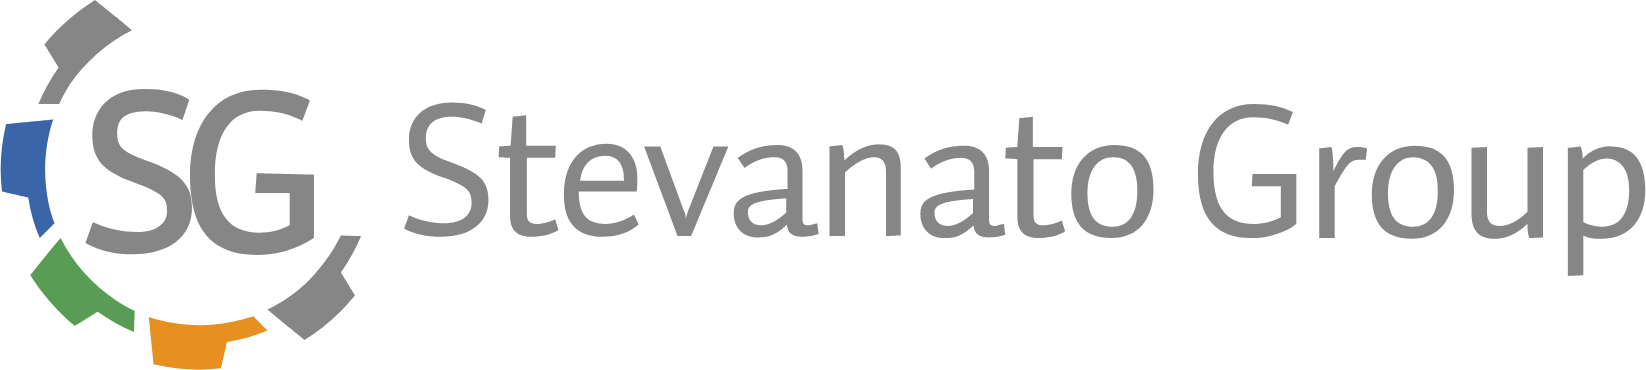 Stevanato logo large (transparent PNG)